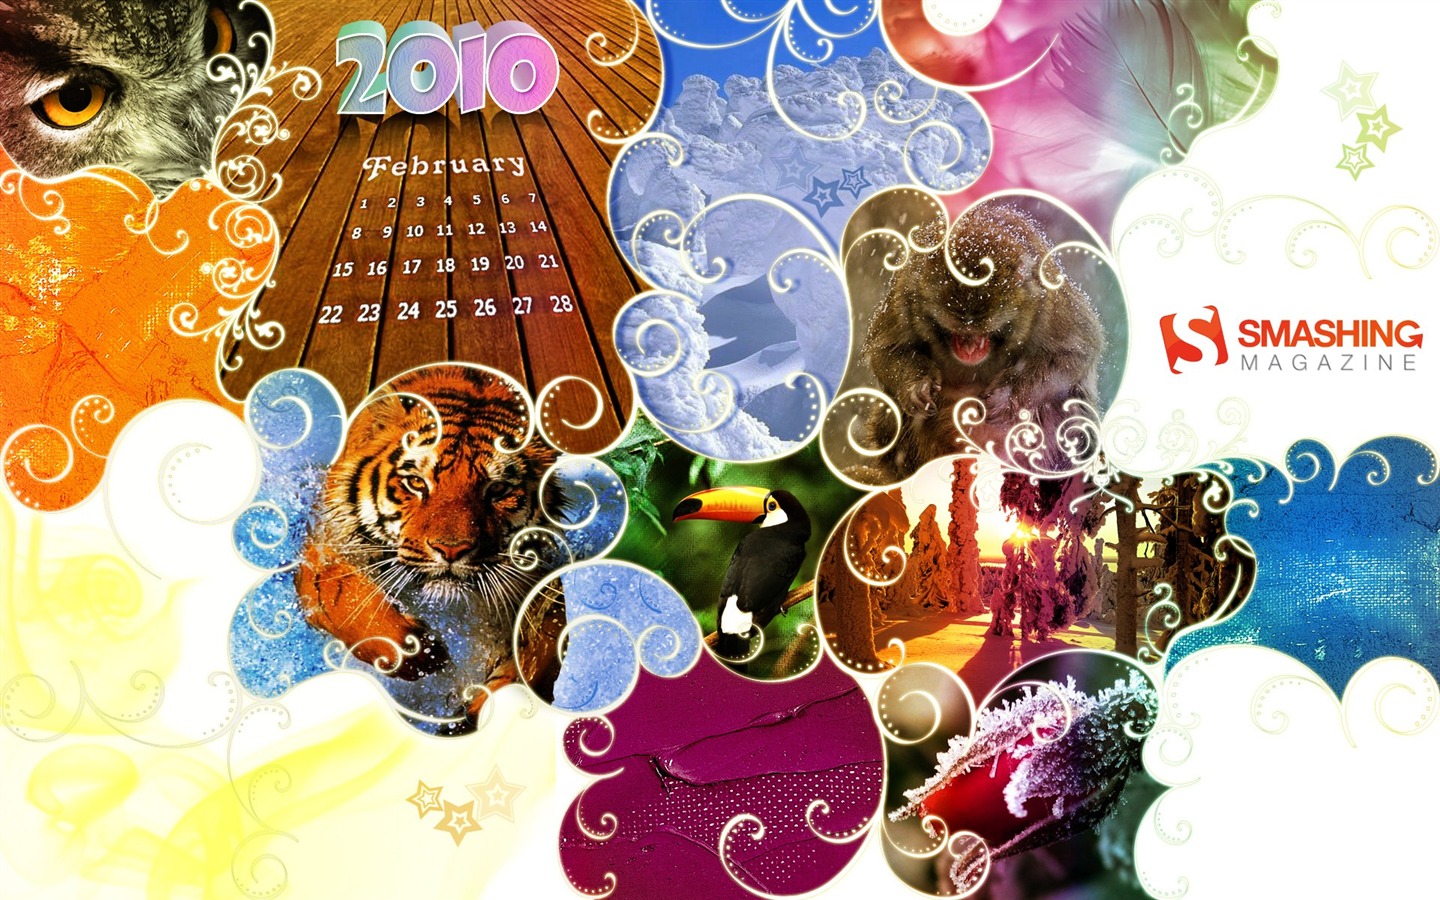 února 2010 Kalendář Wallpaper Creative #1 - 1440x900